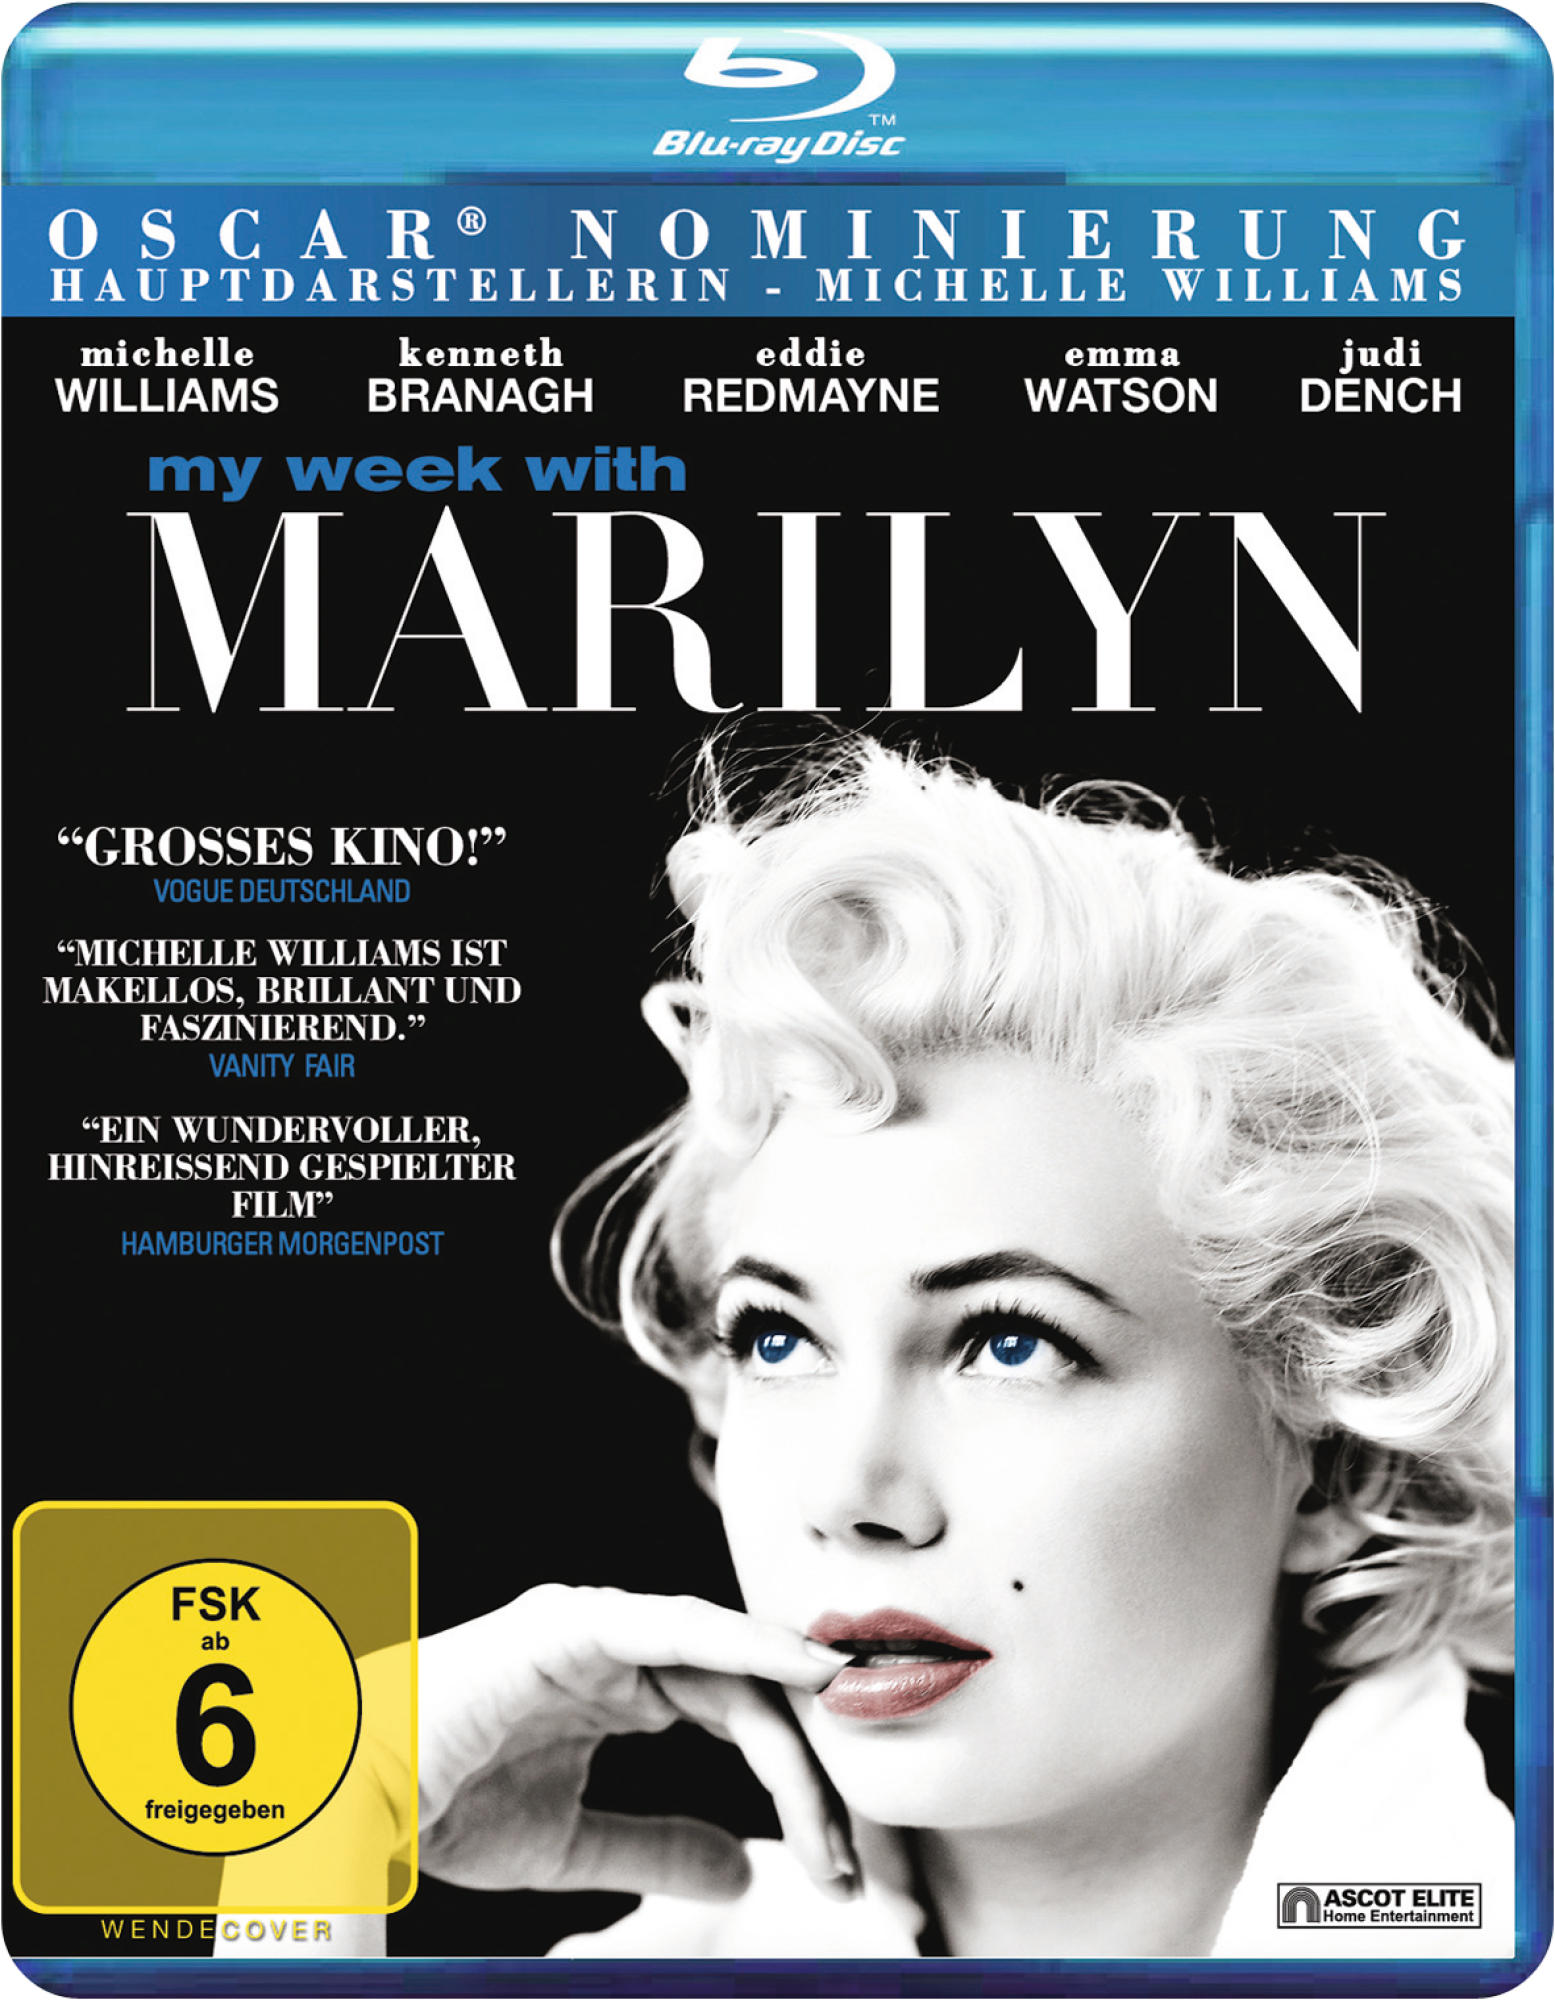 My Week With Blu-ray Marilyn